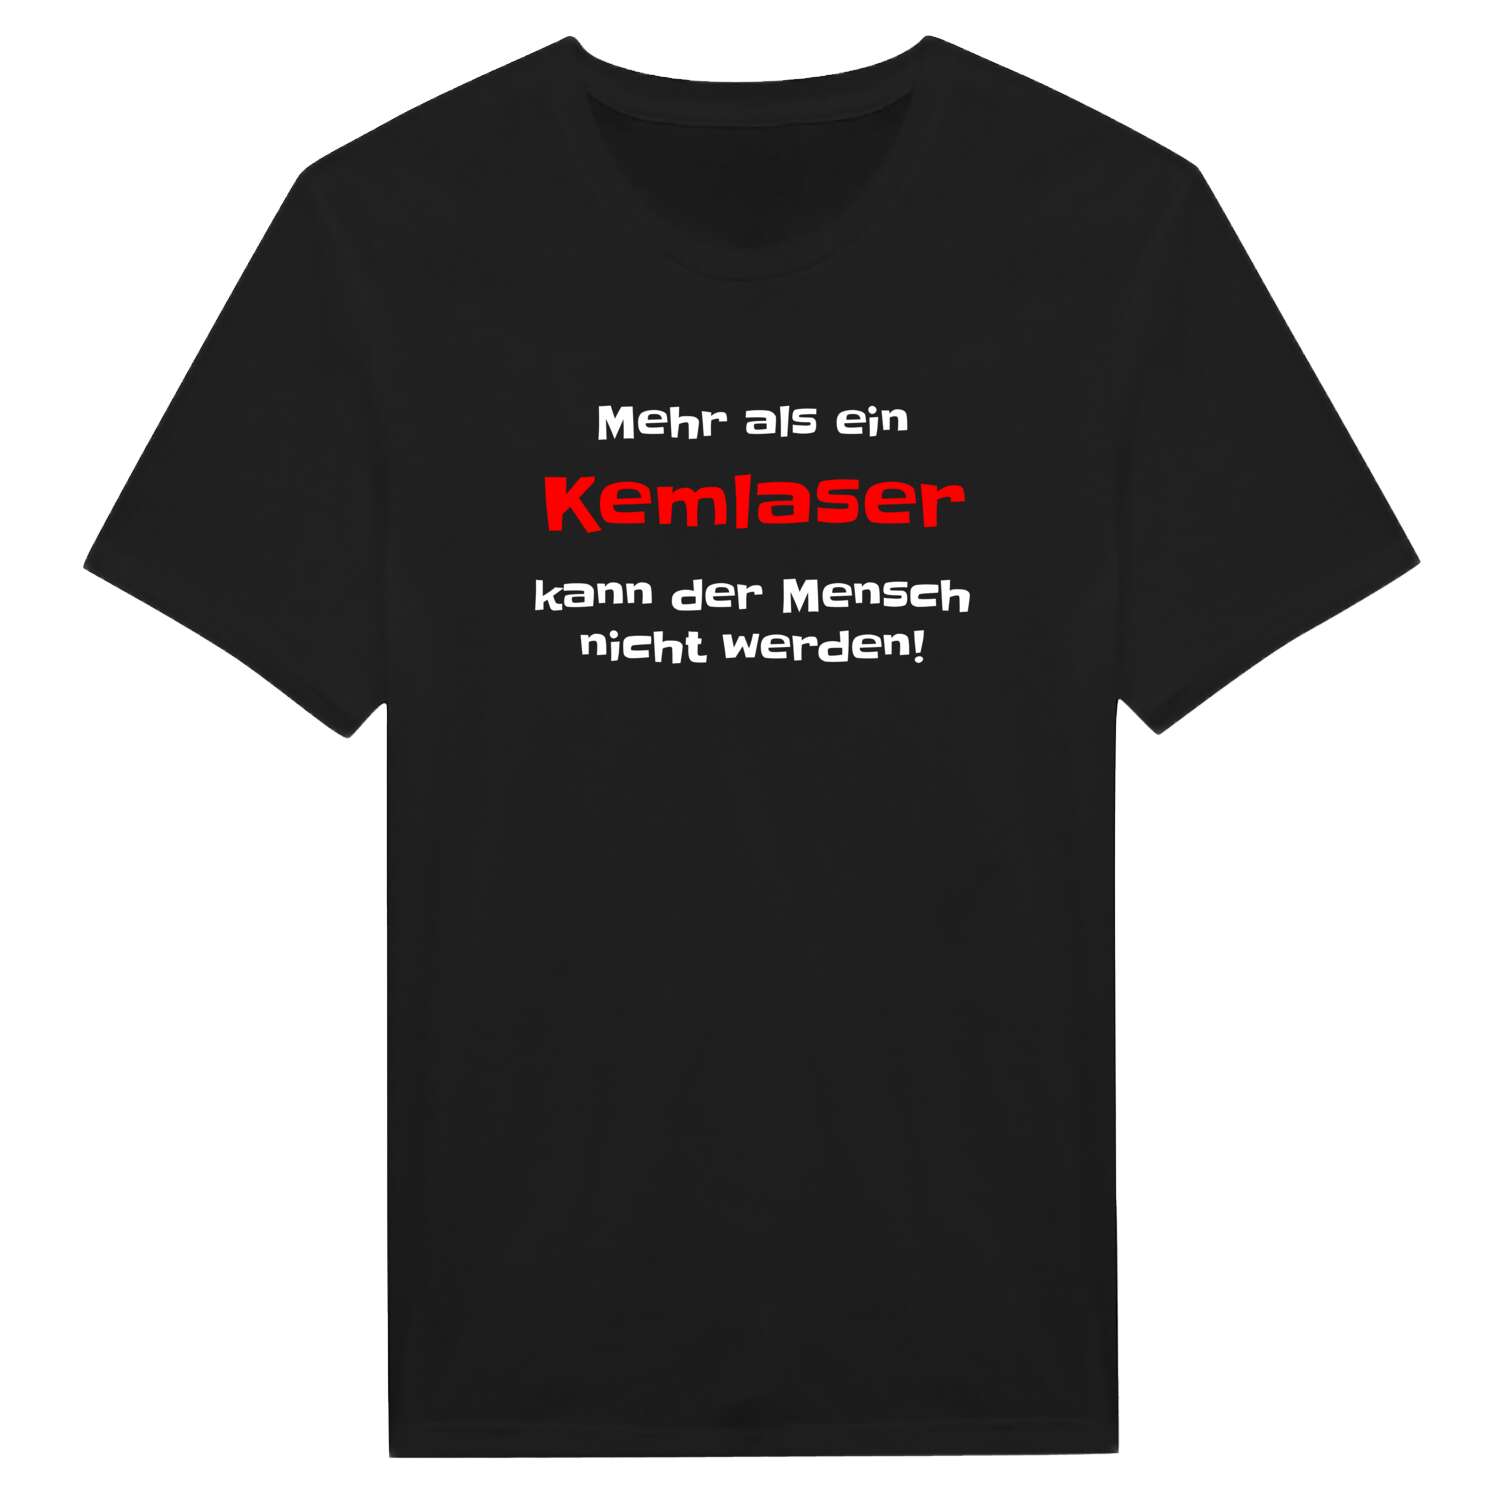 Kemlas T-Shirt »Mehr als ein«